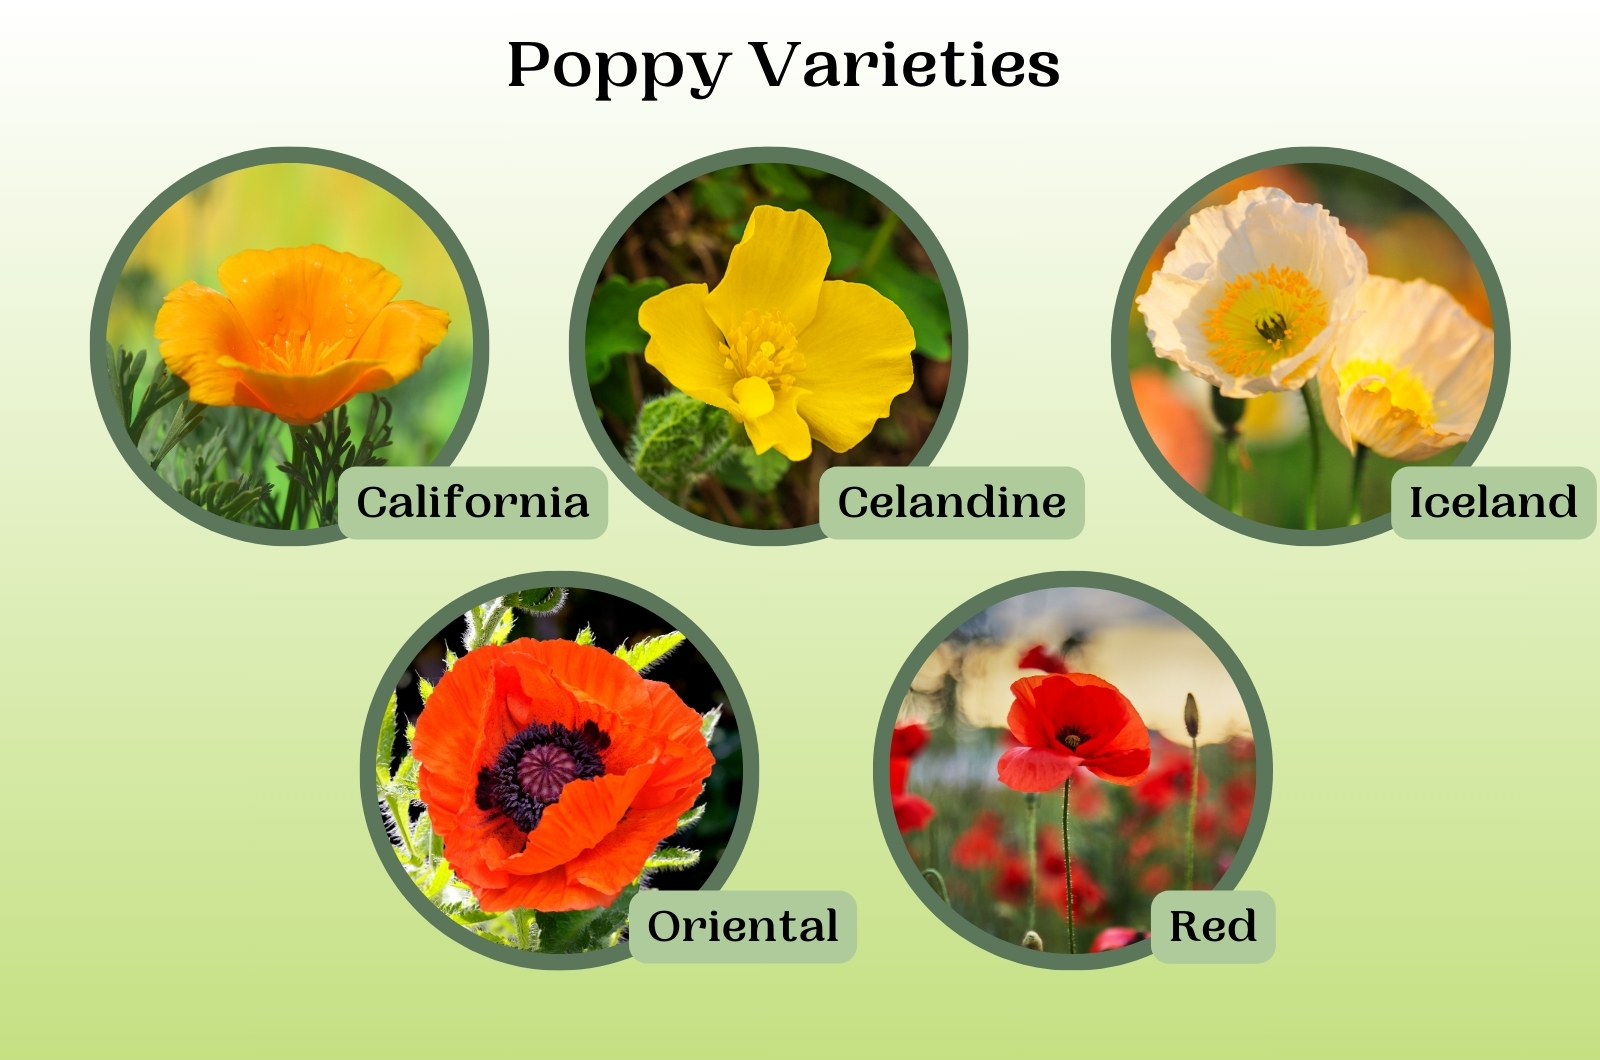 Poppy variety